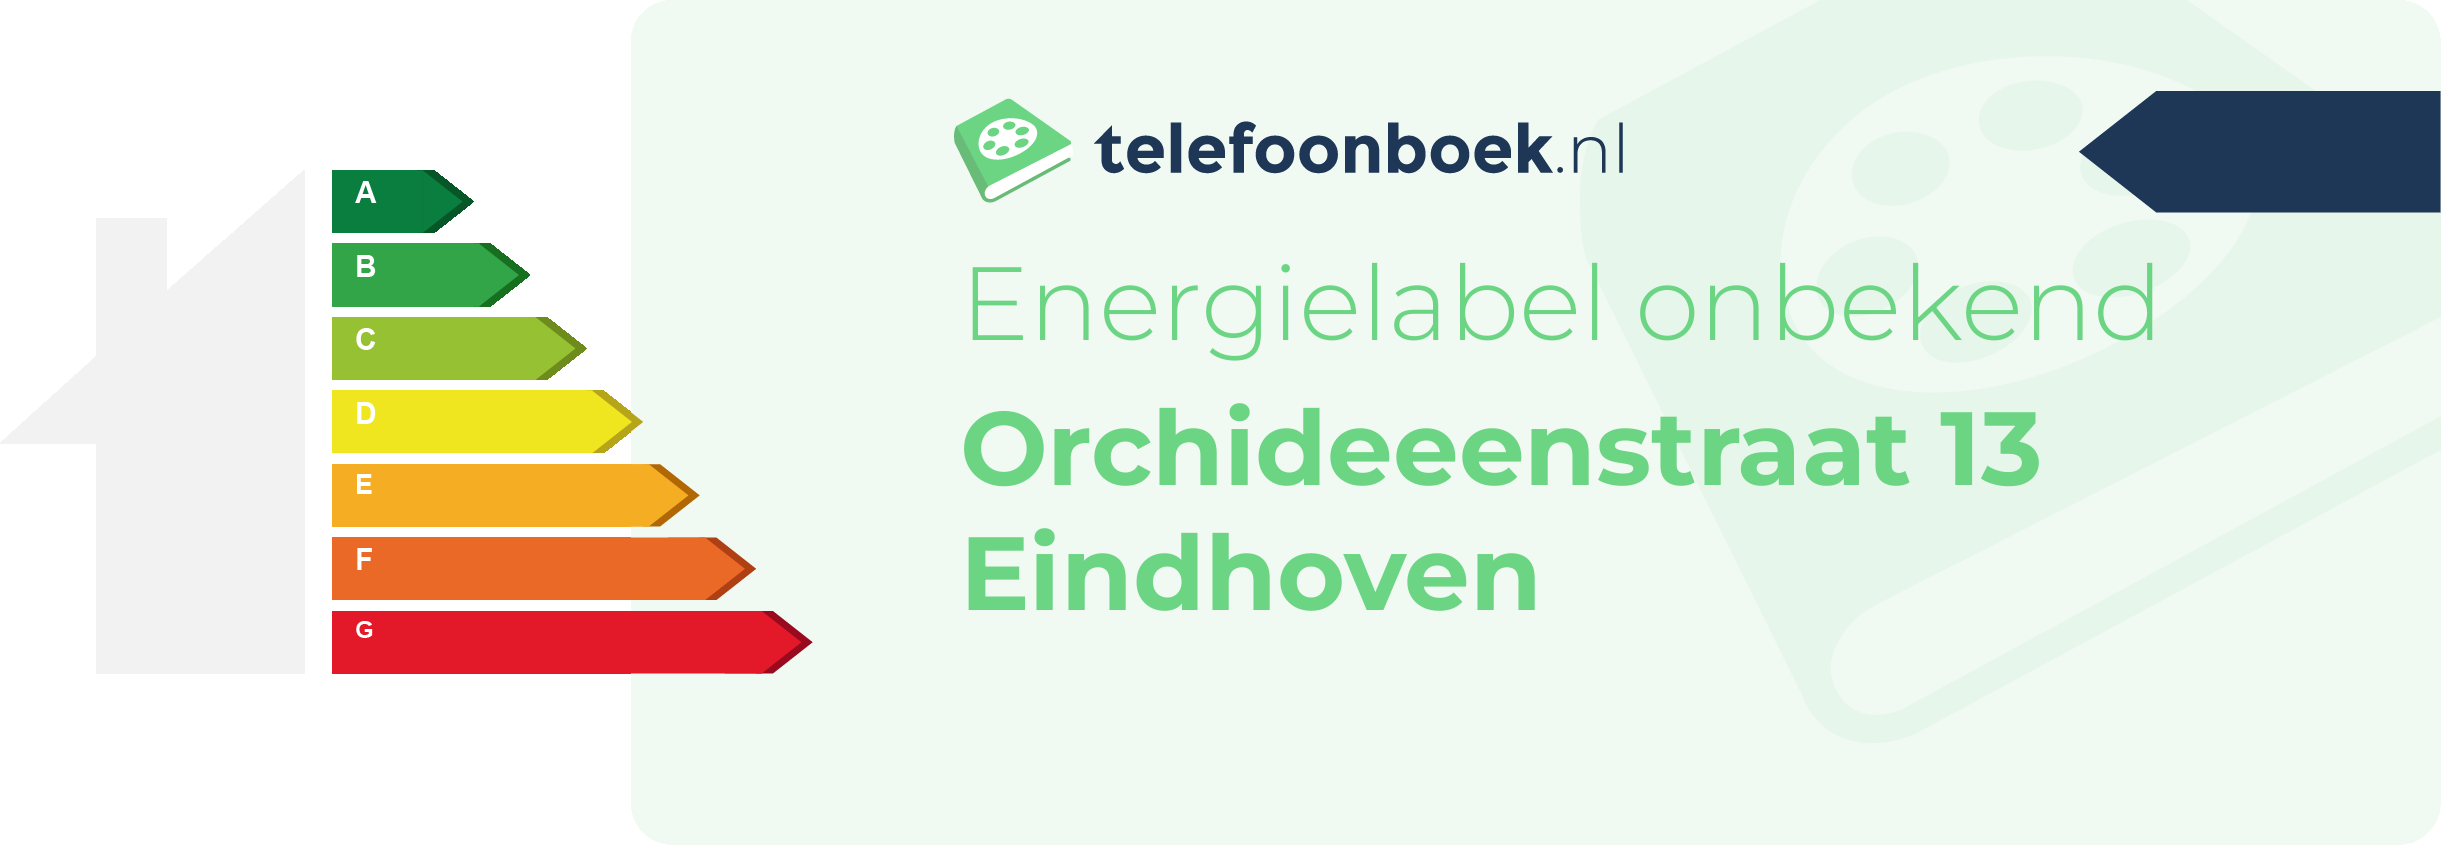 Energielabel Orchideeenstraat 13 Eindhoven